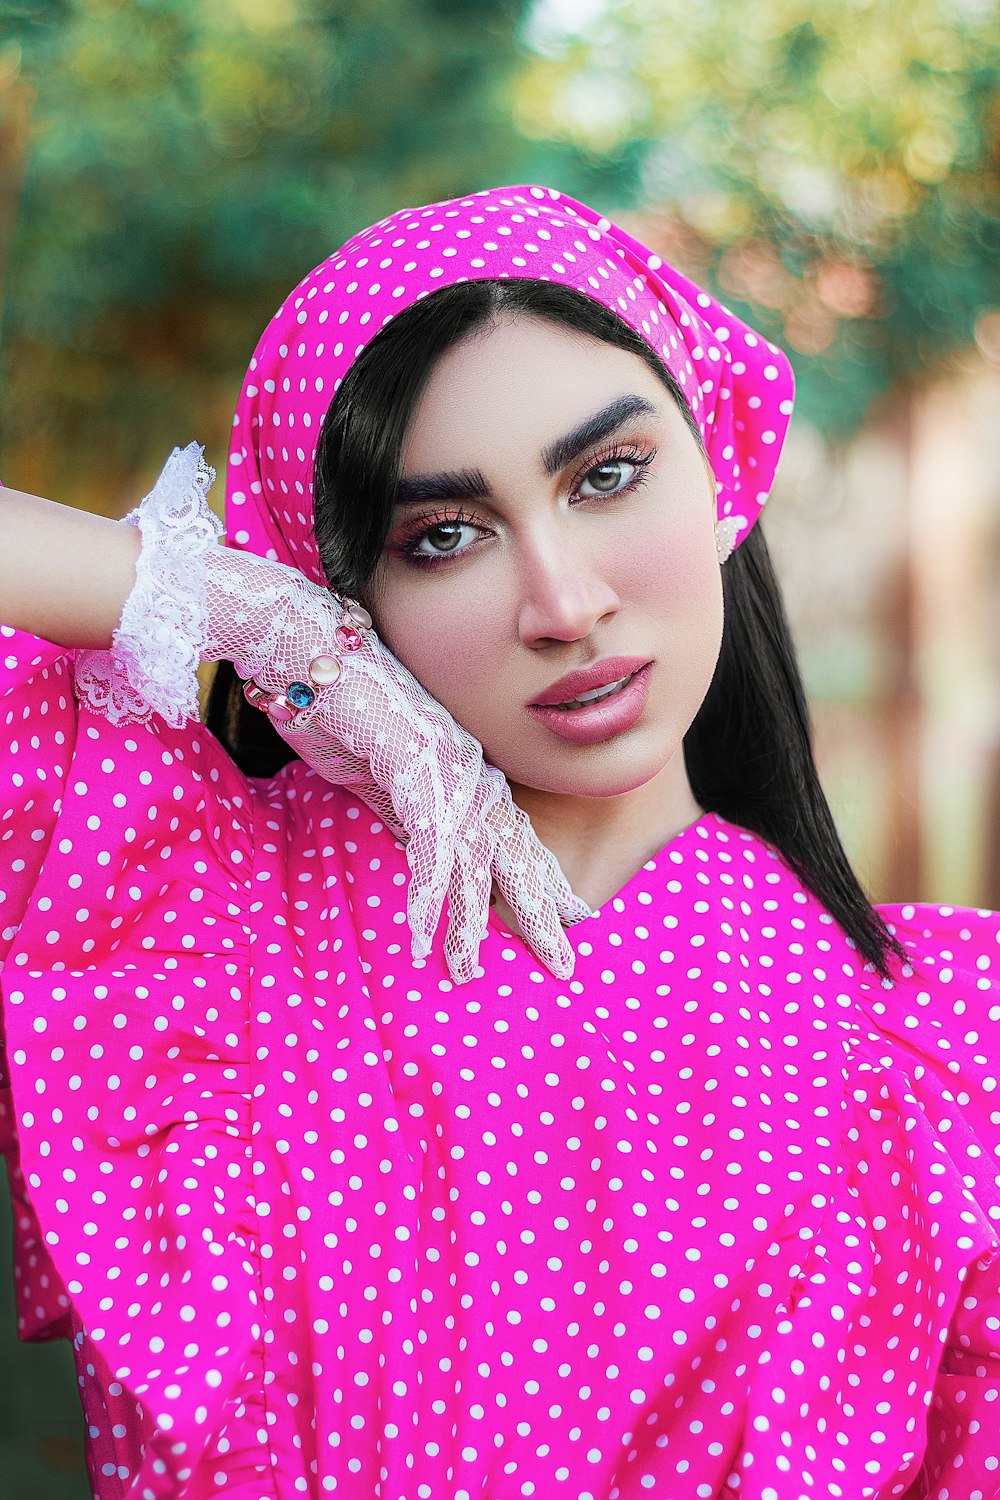 분홍색과 흰색 물방울 무늬 히잡을 쓴 여자